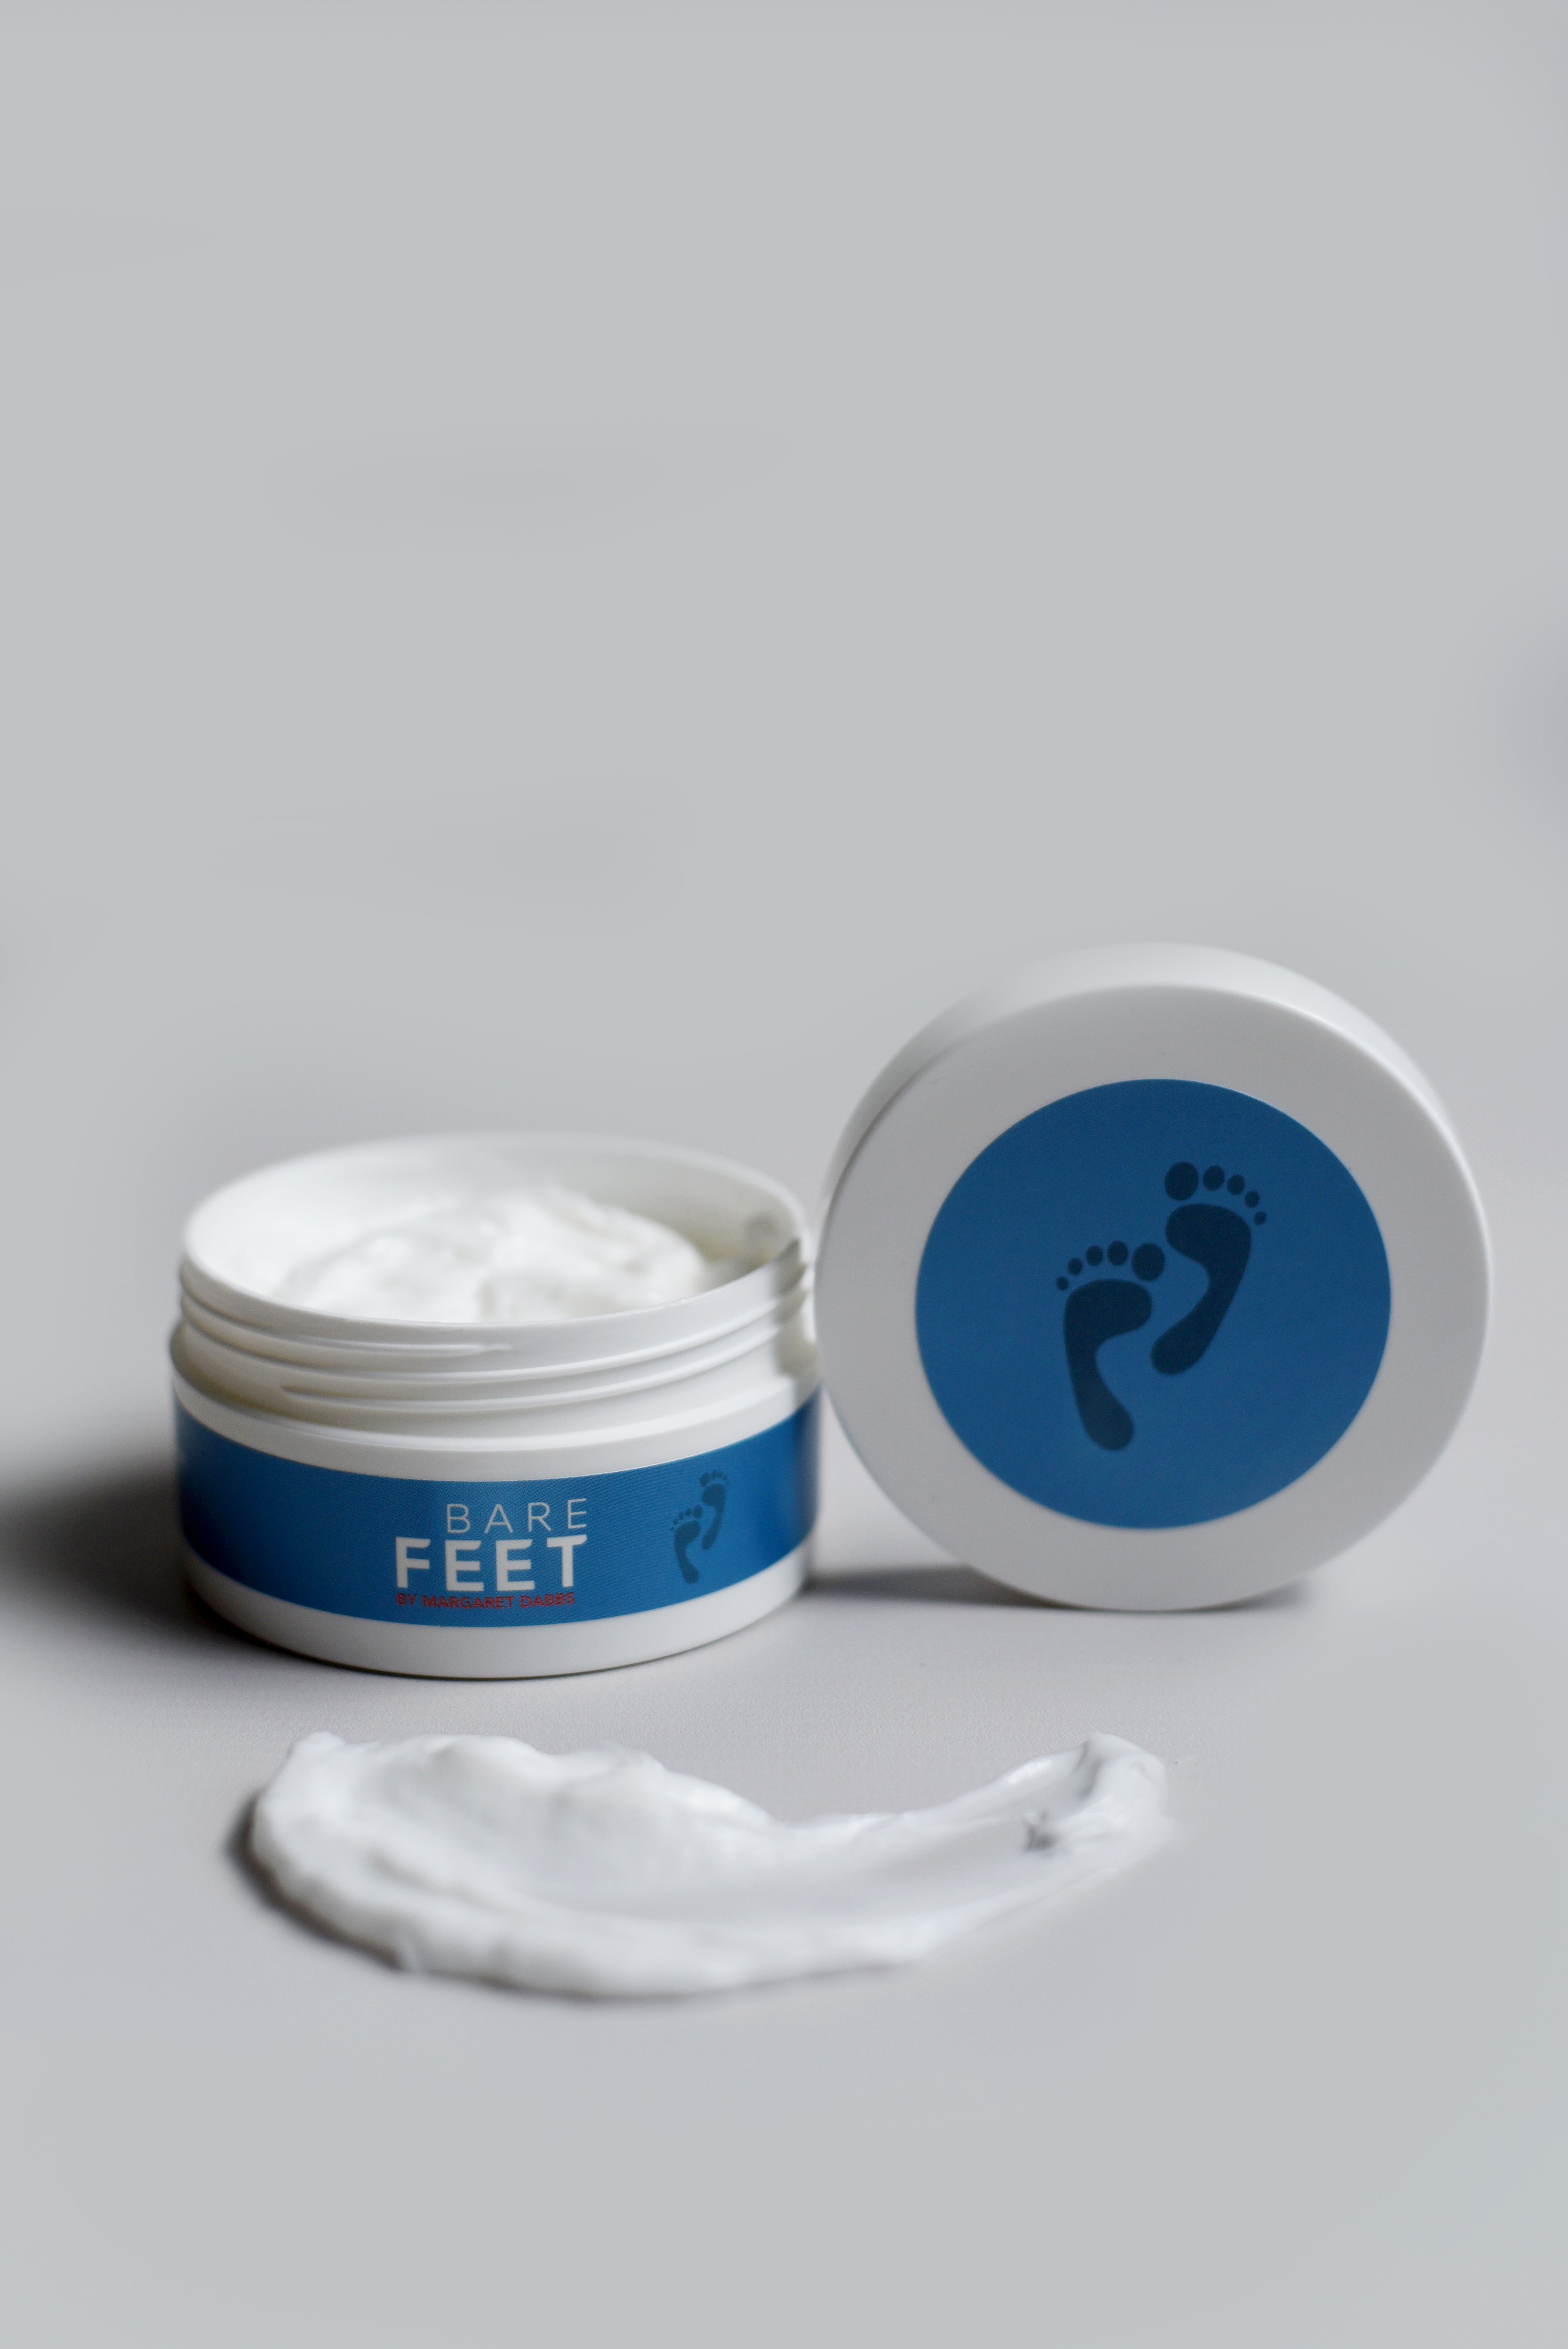 Best Oil For Leg|natural Foot Cream 85g - Heel Crack Repair & Moisturizing  For Dry Feet